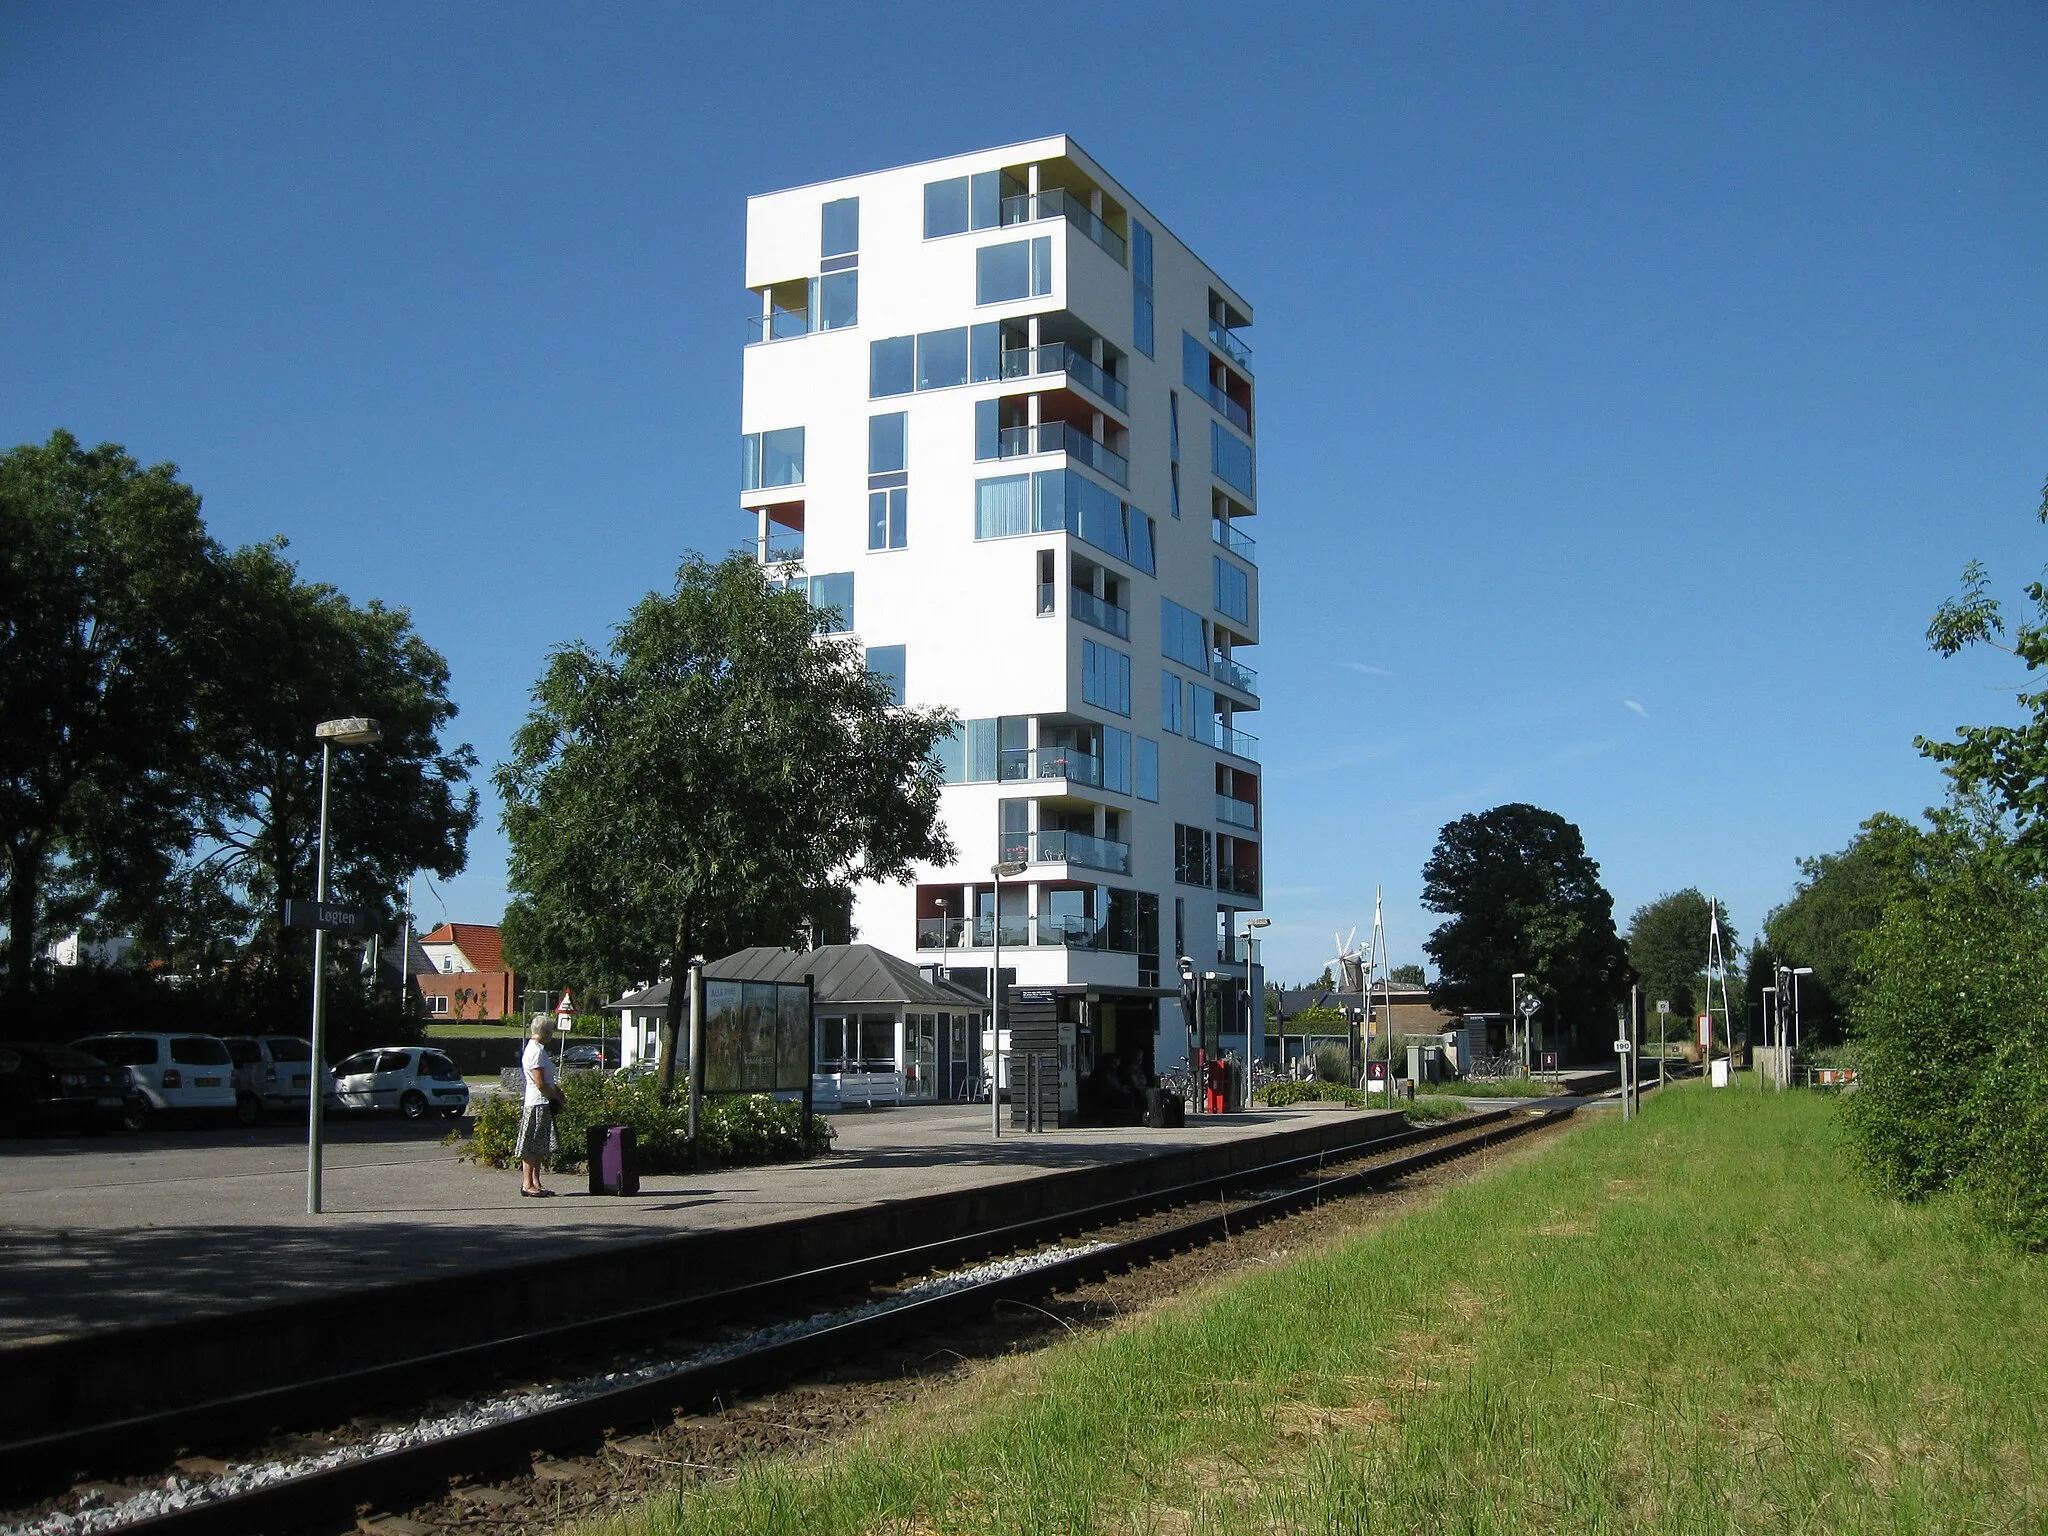 Photo showing: Løgten train station, Denmark